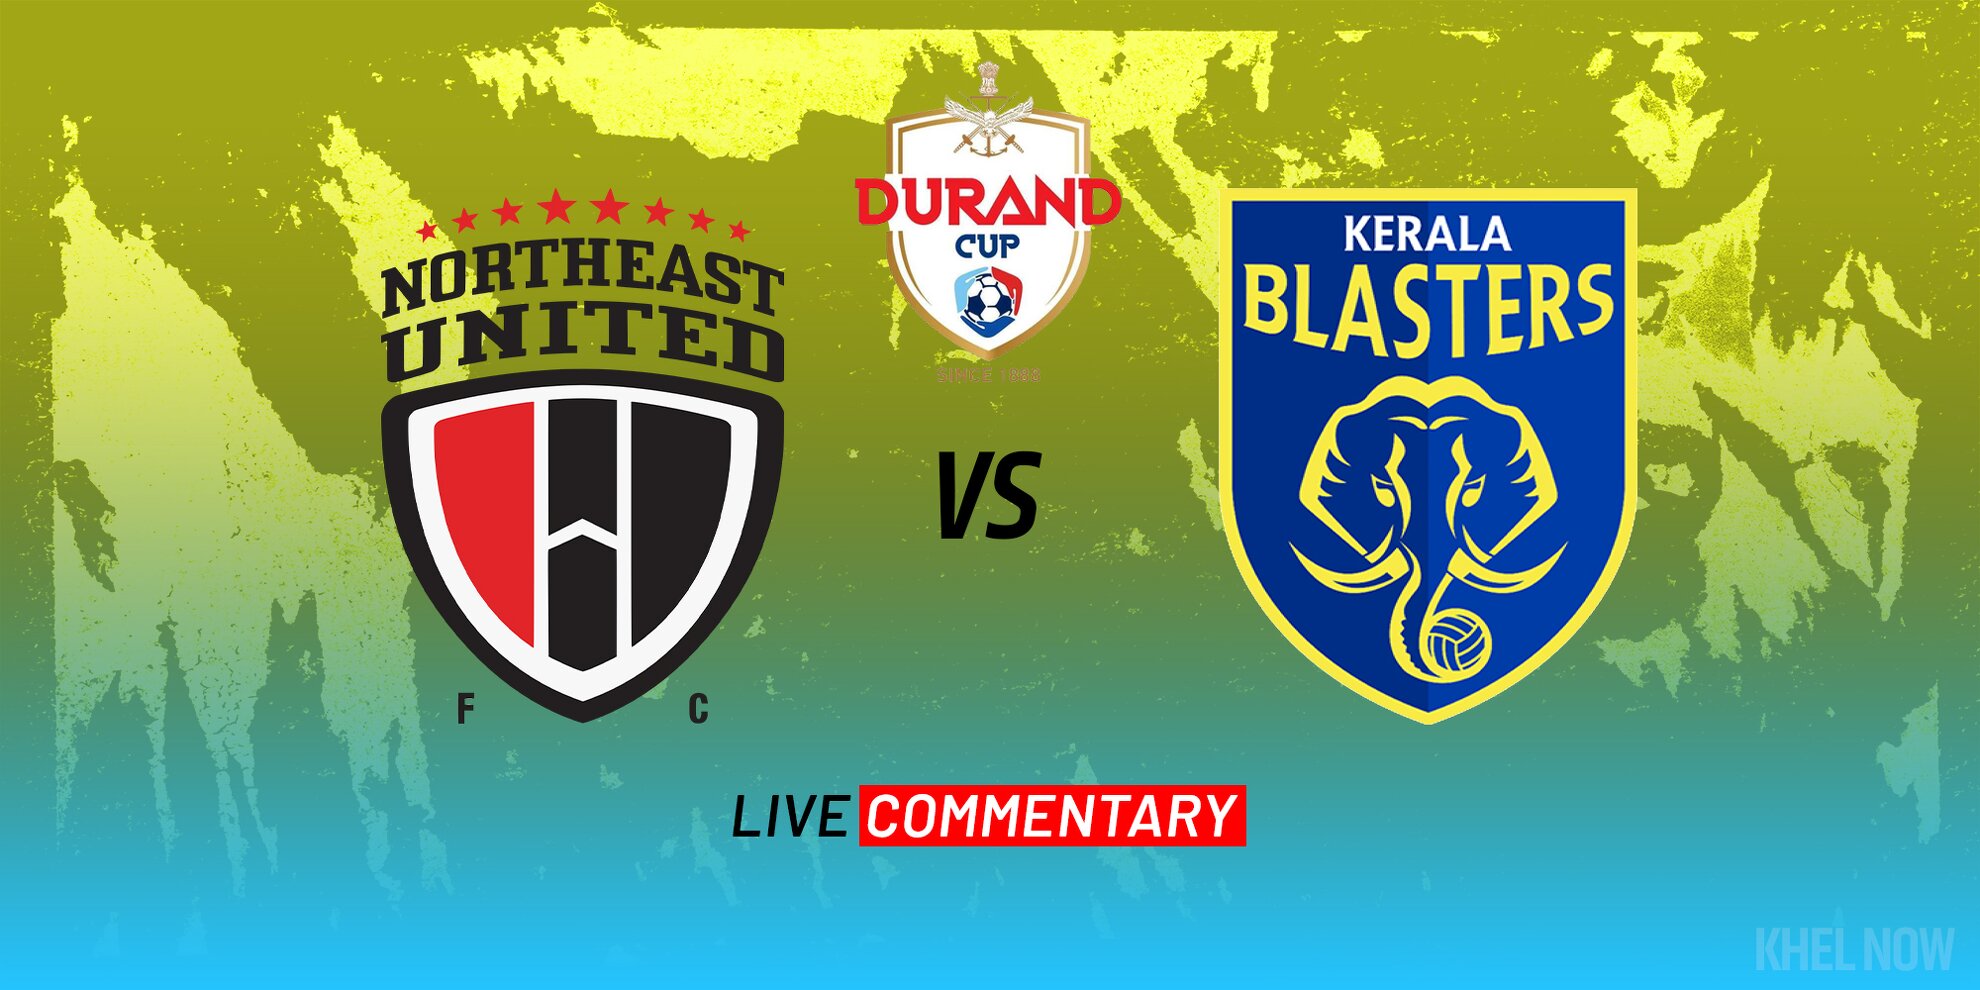 NorthEast United Vs Kerala Blasters